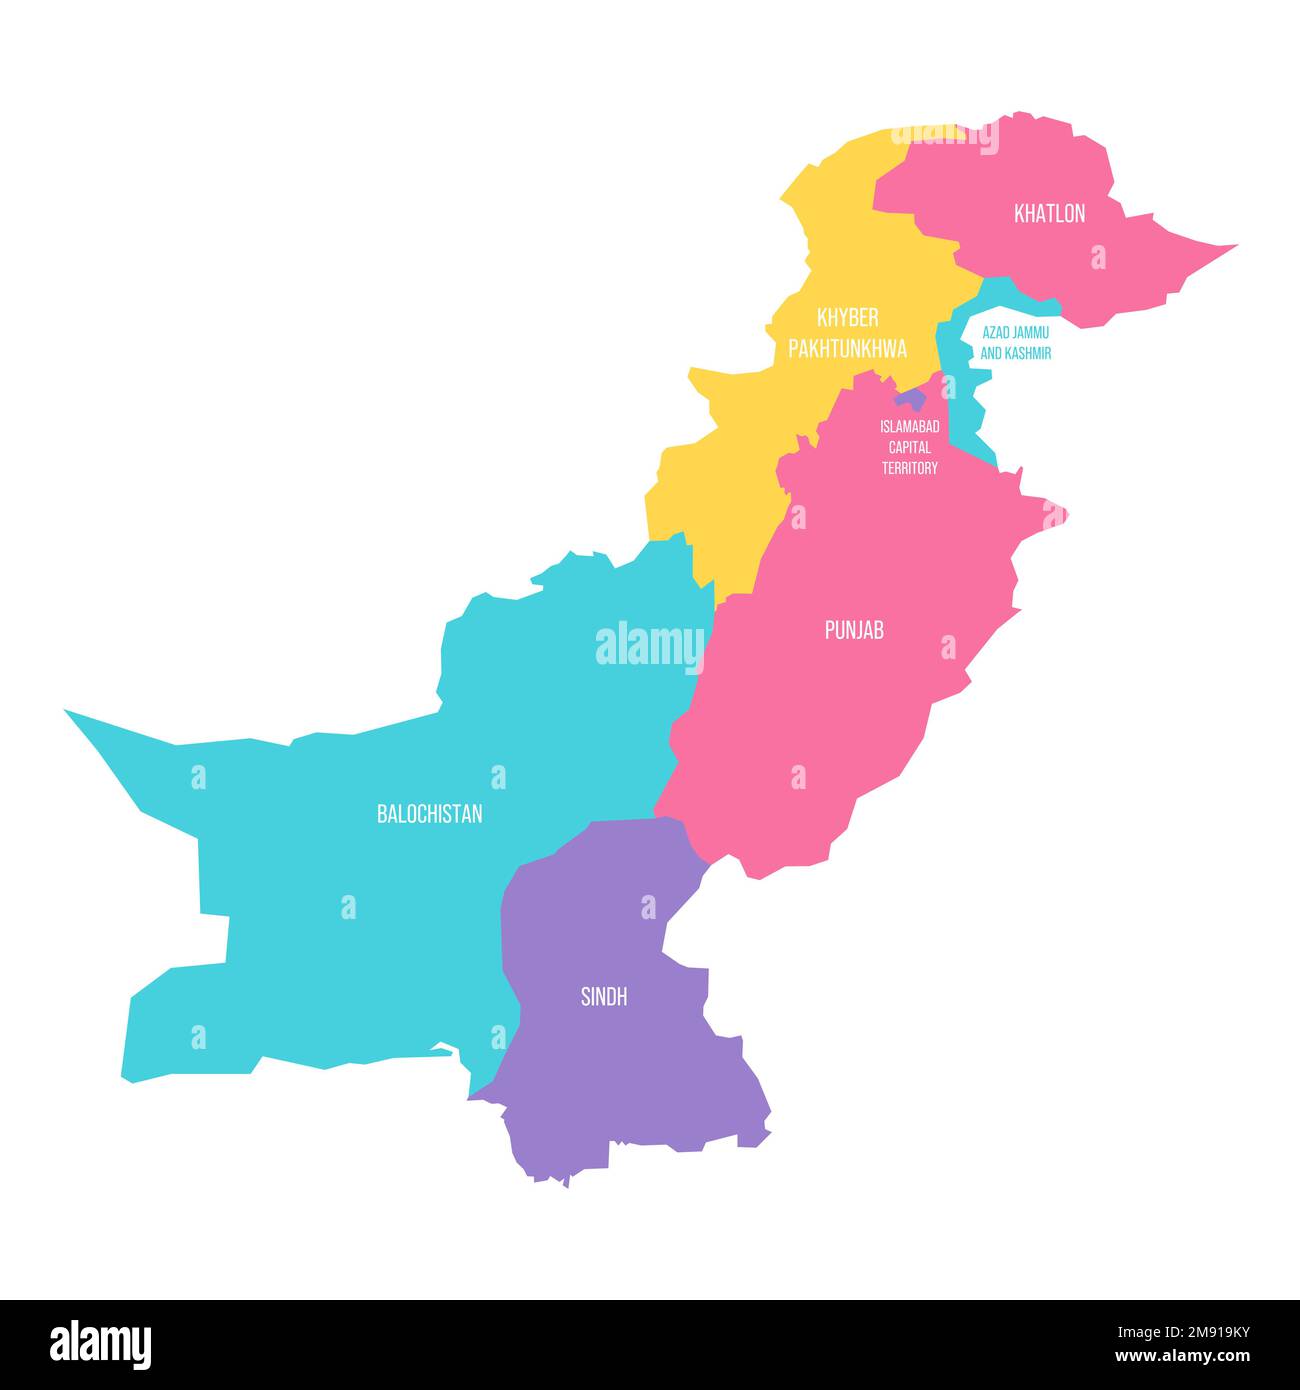 Politische Karte der Verwaltungseinheiten - Provinzen und autonome Gebiete in Pakistan. Farbenfrohe Vektorkarte mit Beschriftungen. Stock Vektor